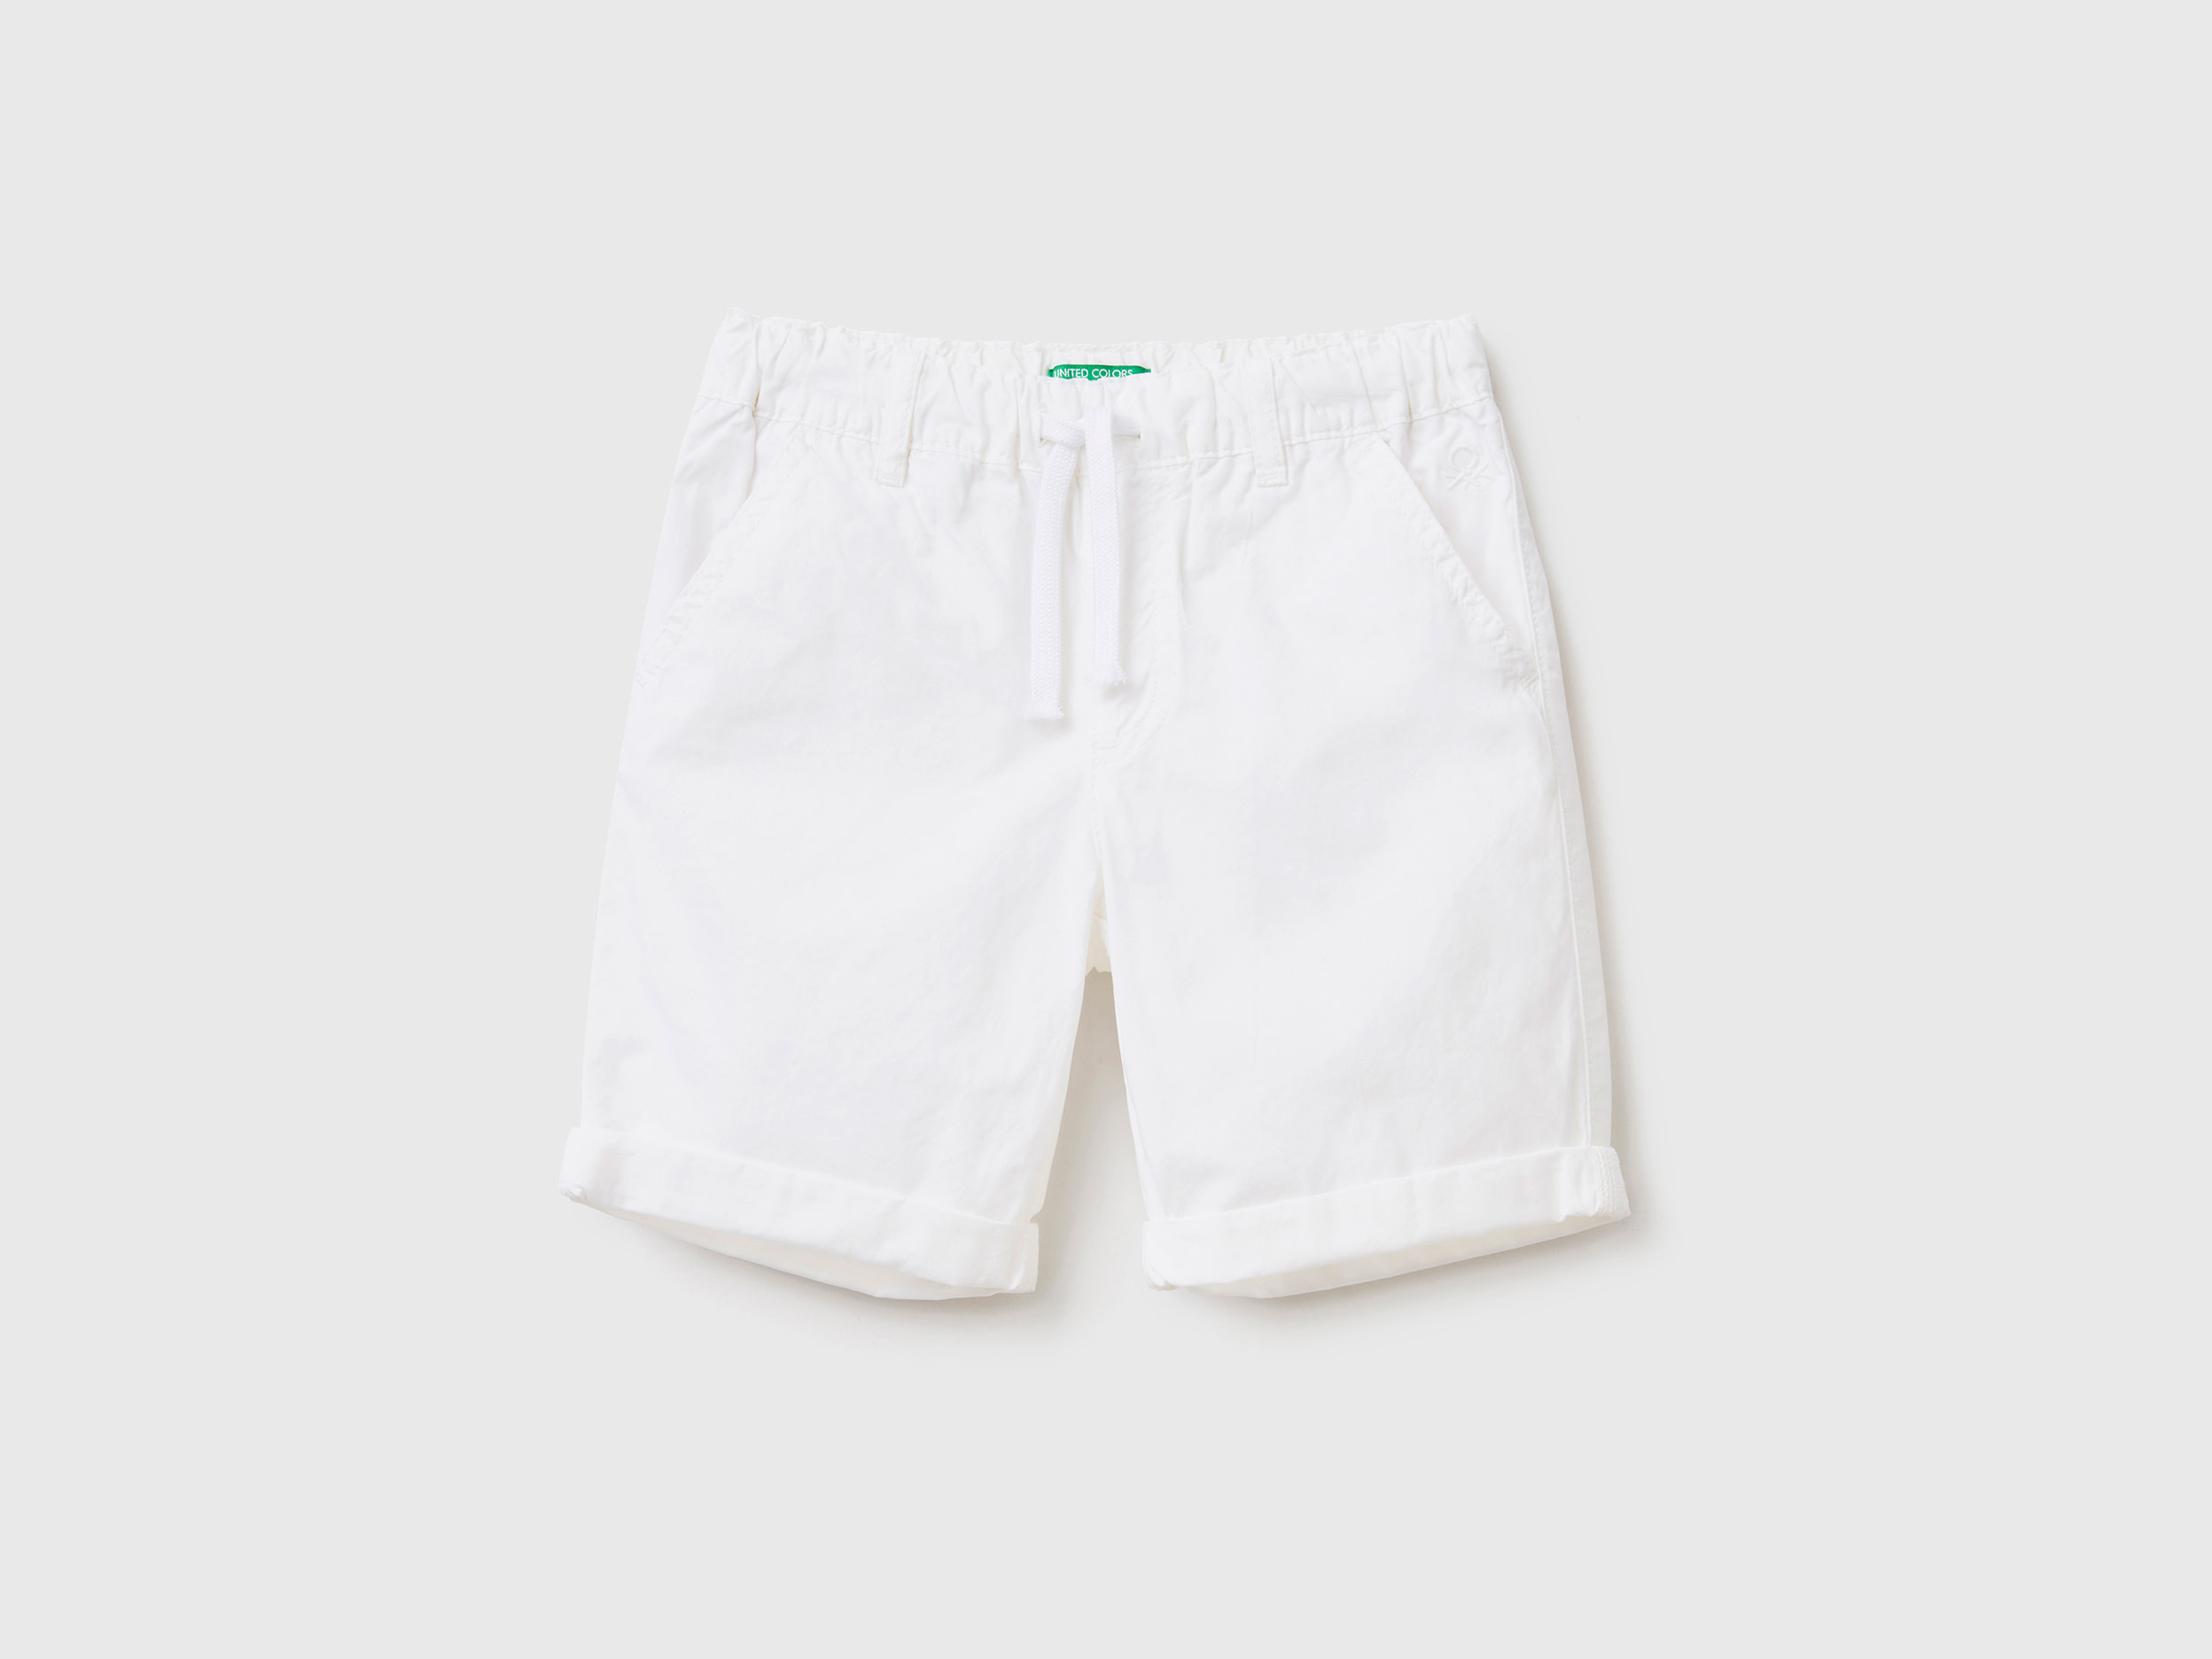 Benetton, 100% Cotton Shorts With Drawstring, size 12-18, White, Kids